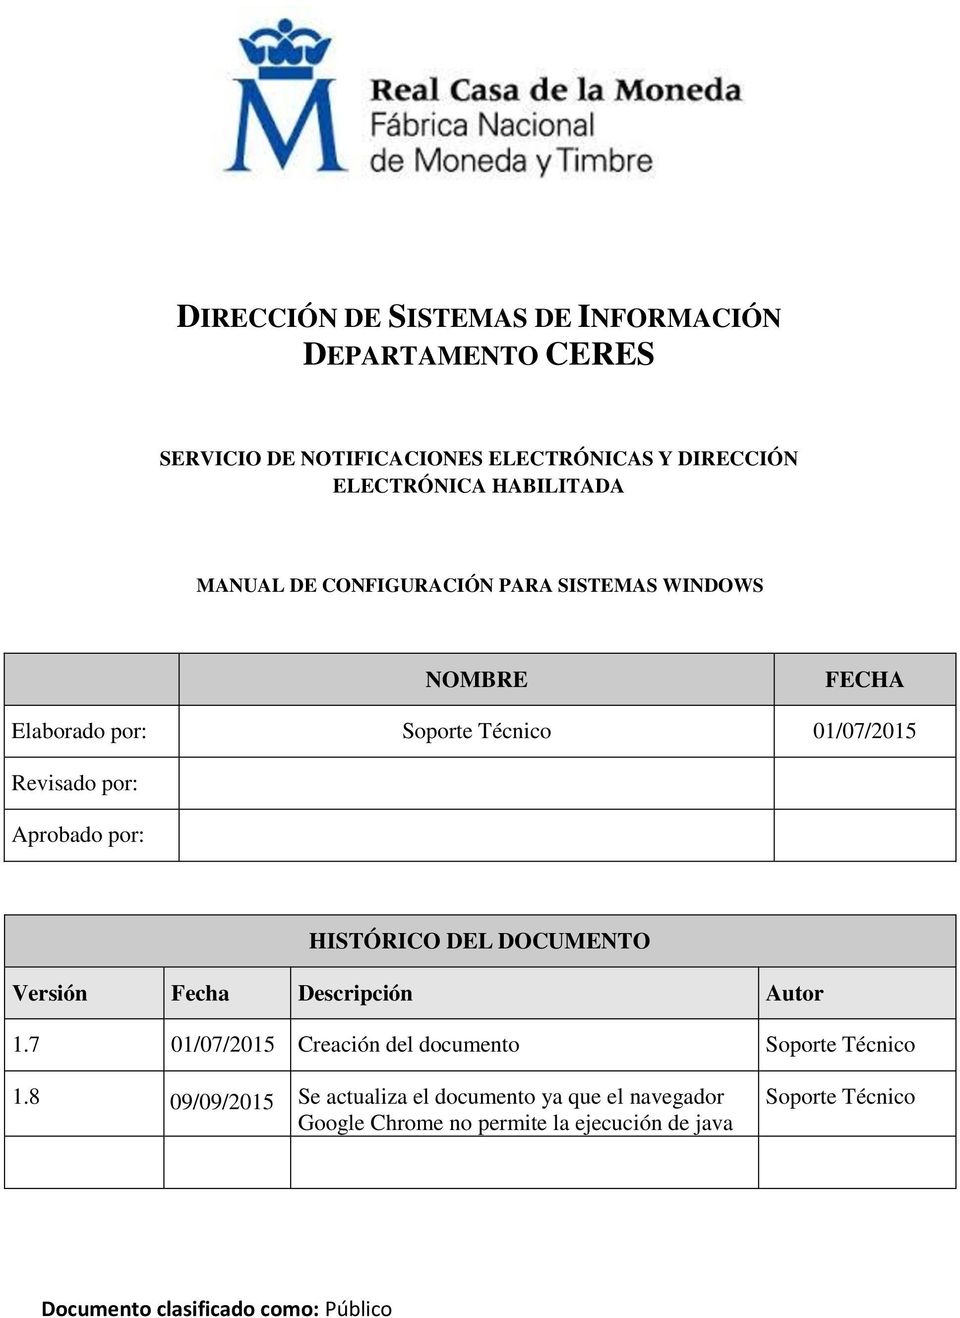 HISTÓRICO DEL DOCUMENTO Versión Fecha Descripción Autor 1.7 01/07/2015 Creación del documento Soporte Técnico 1.